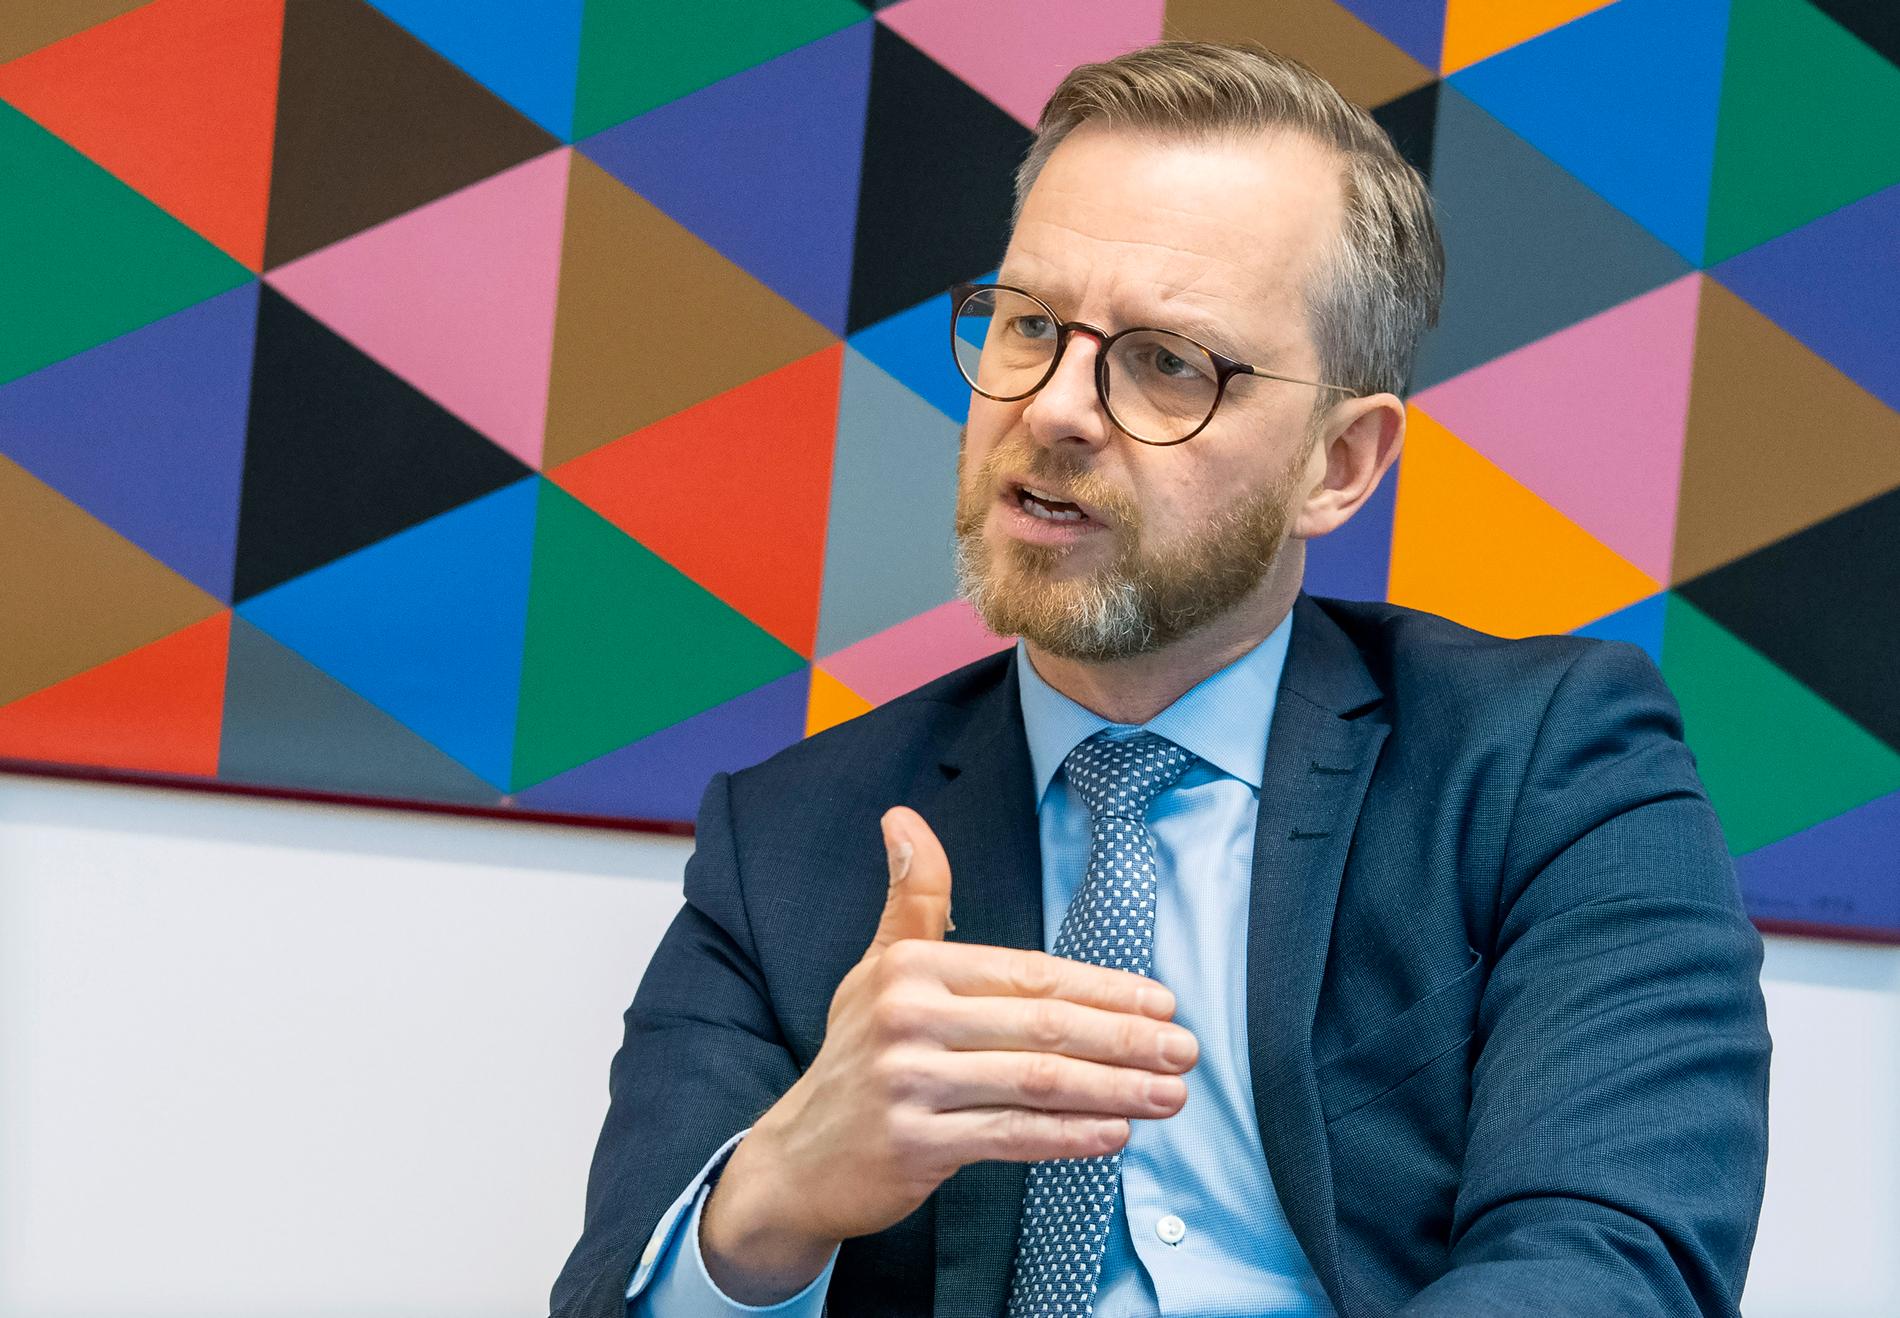 Inrikesminister Mikael Damberg intervjuas av TT Nyhetsbyrån.